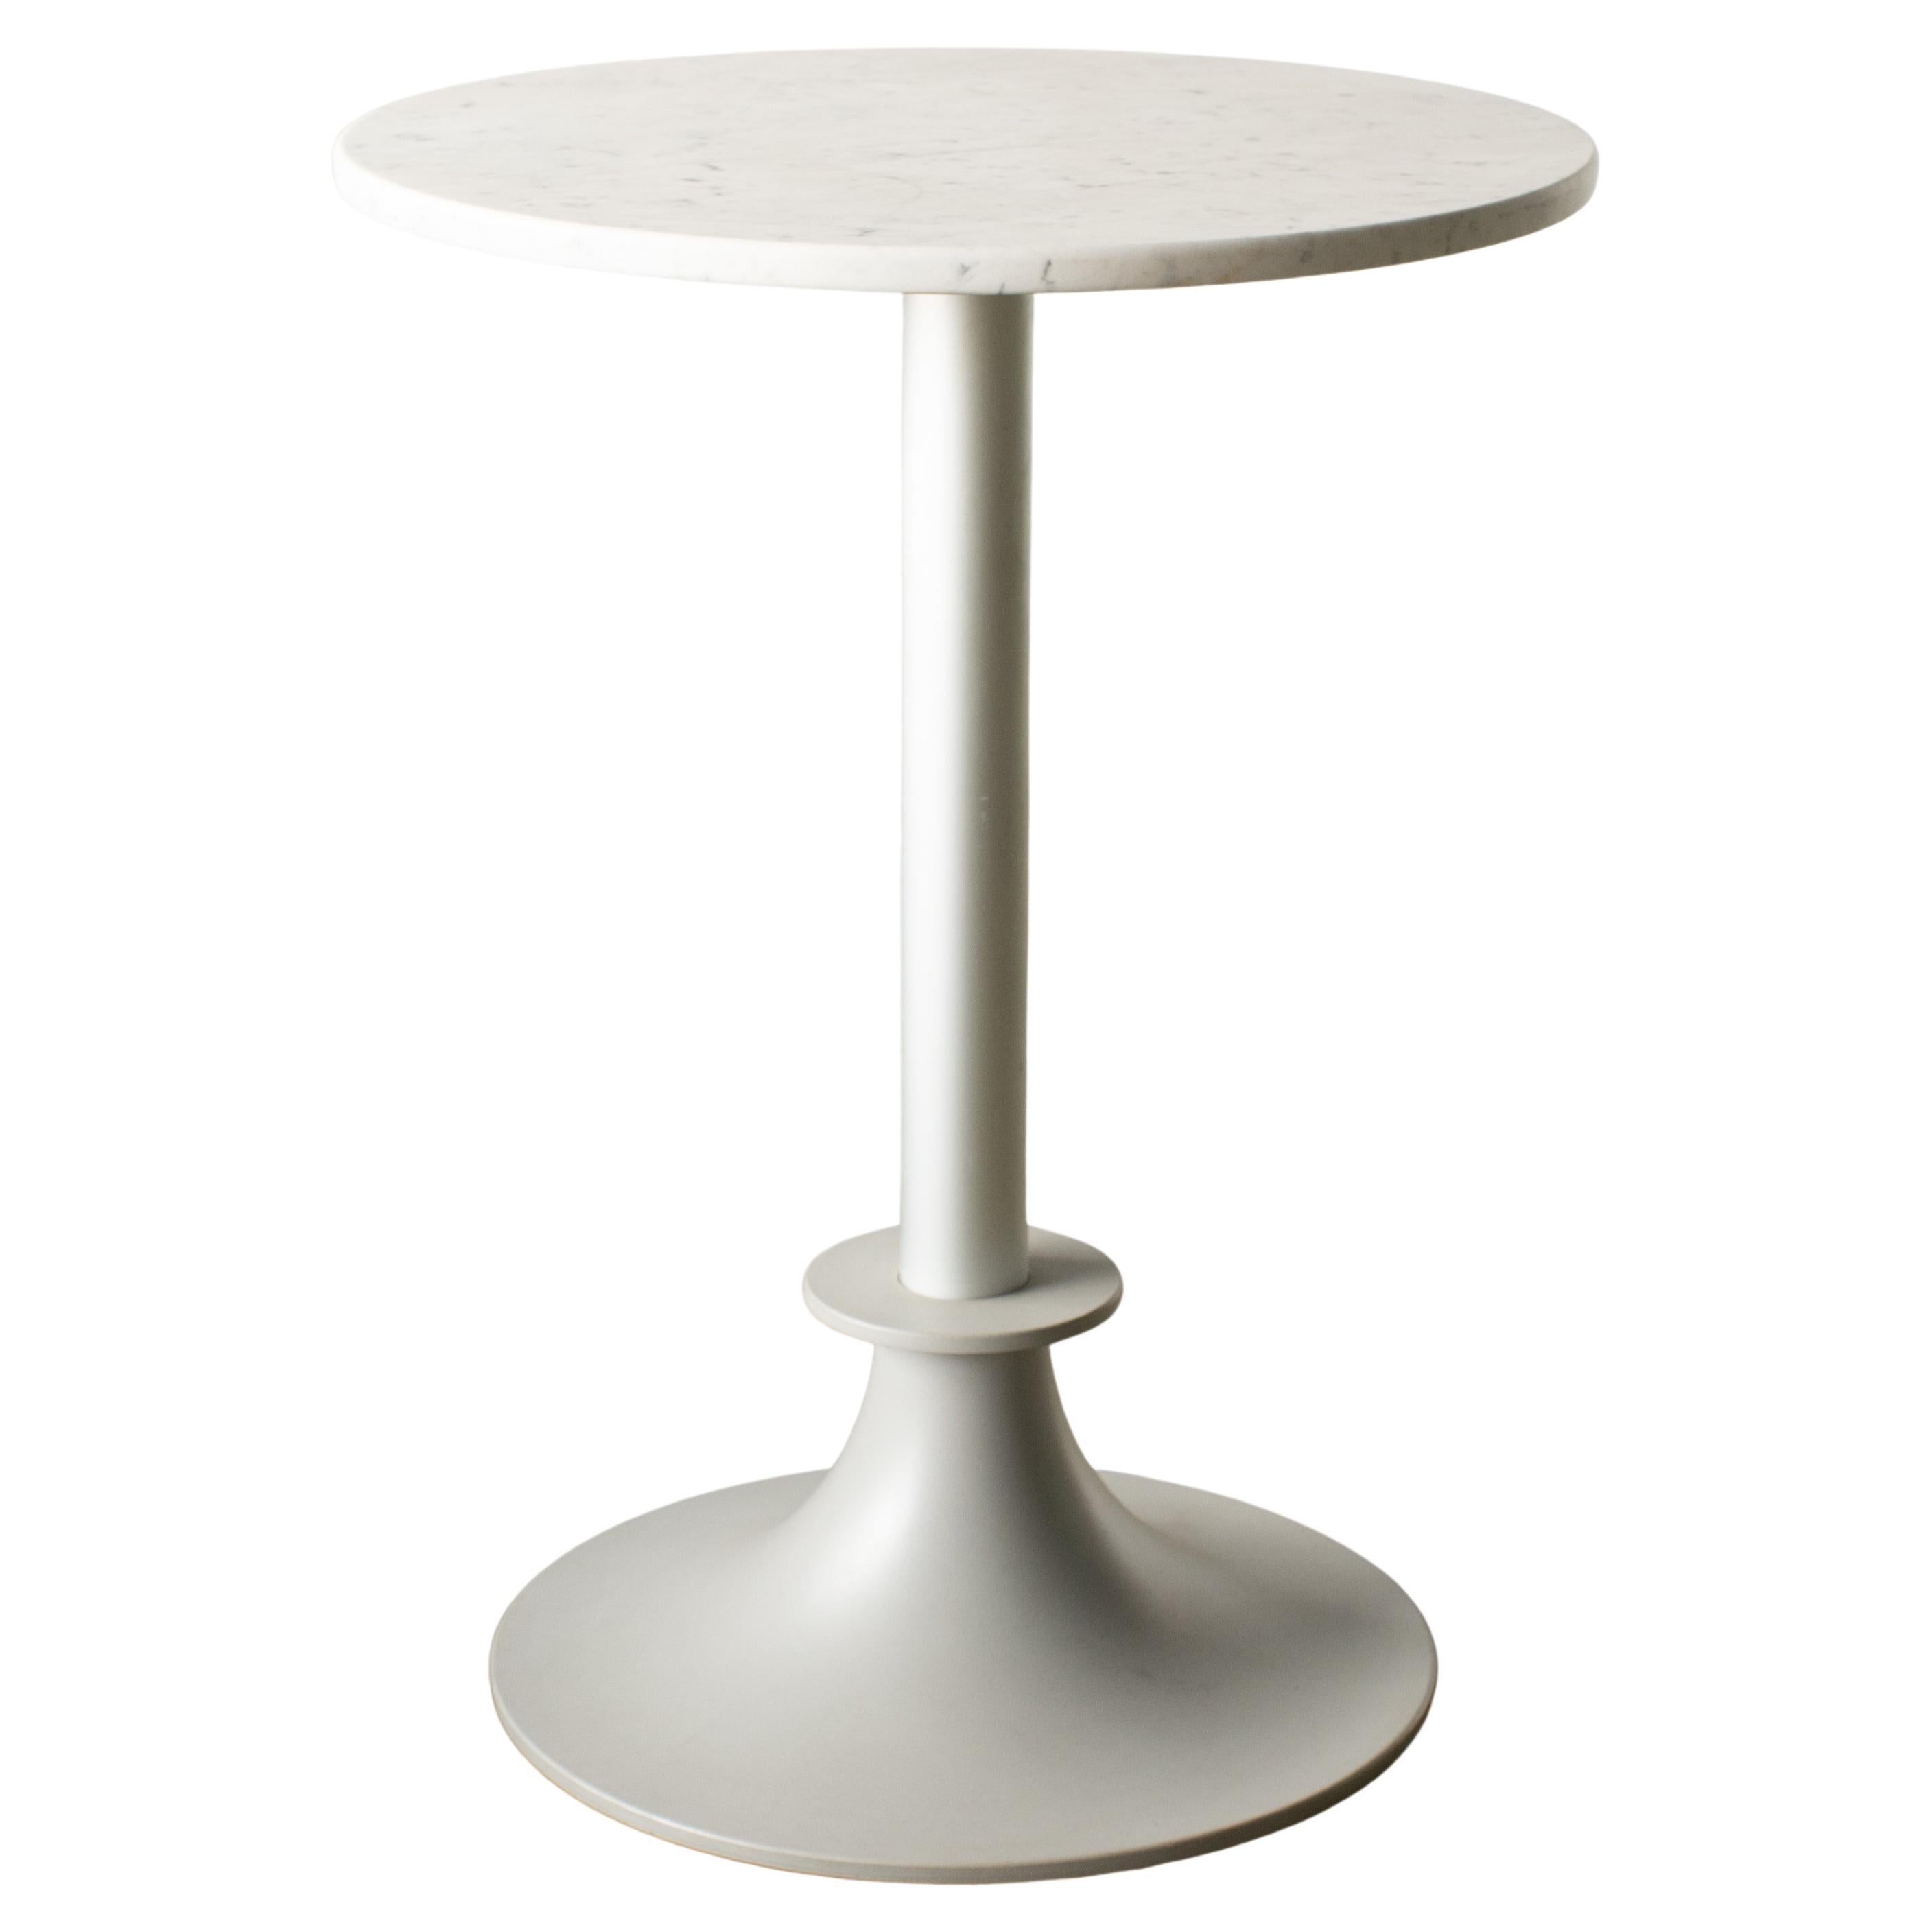 Table d'appoint en marbre Lord Yi, chaise postmoderne minimaliste de Philippe Starck, en stock